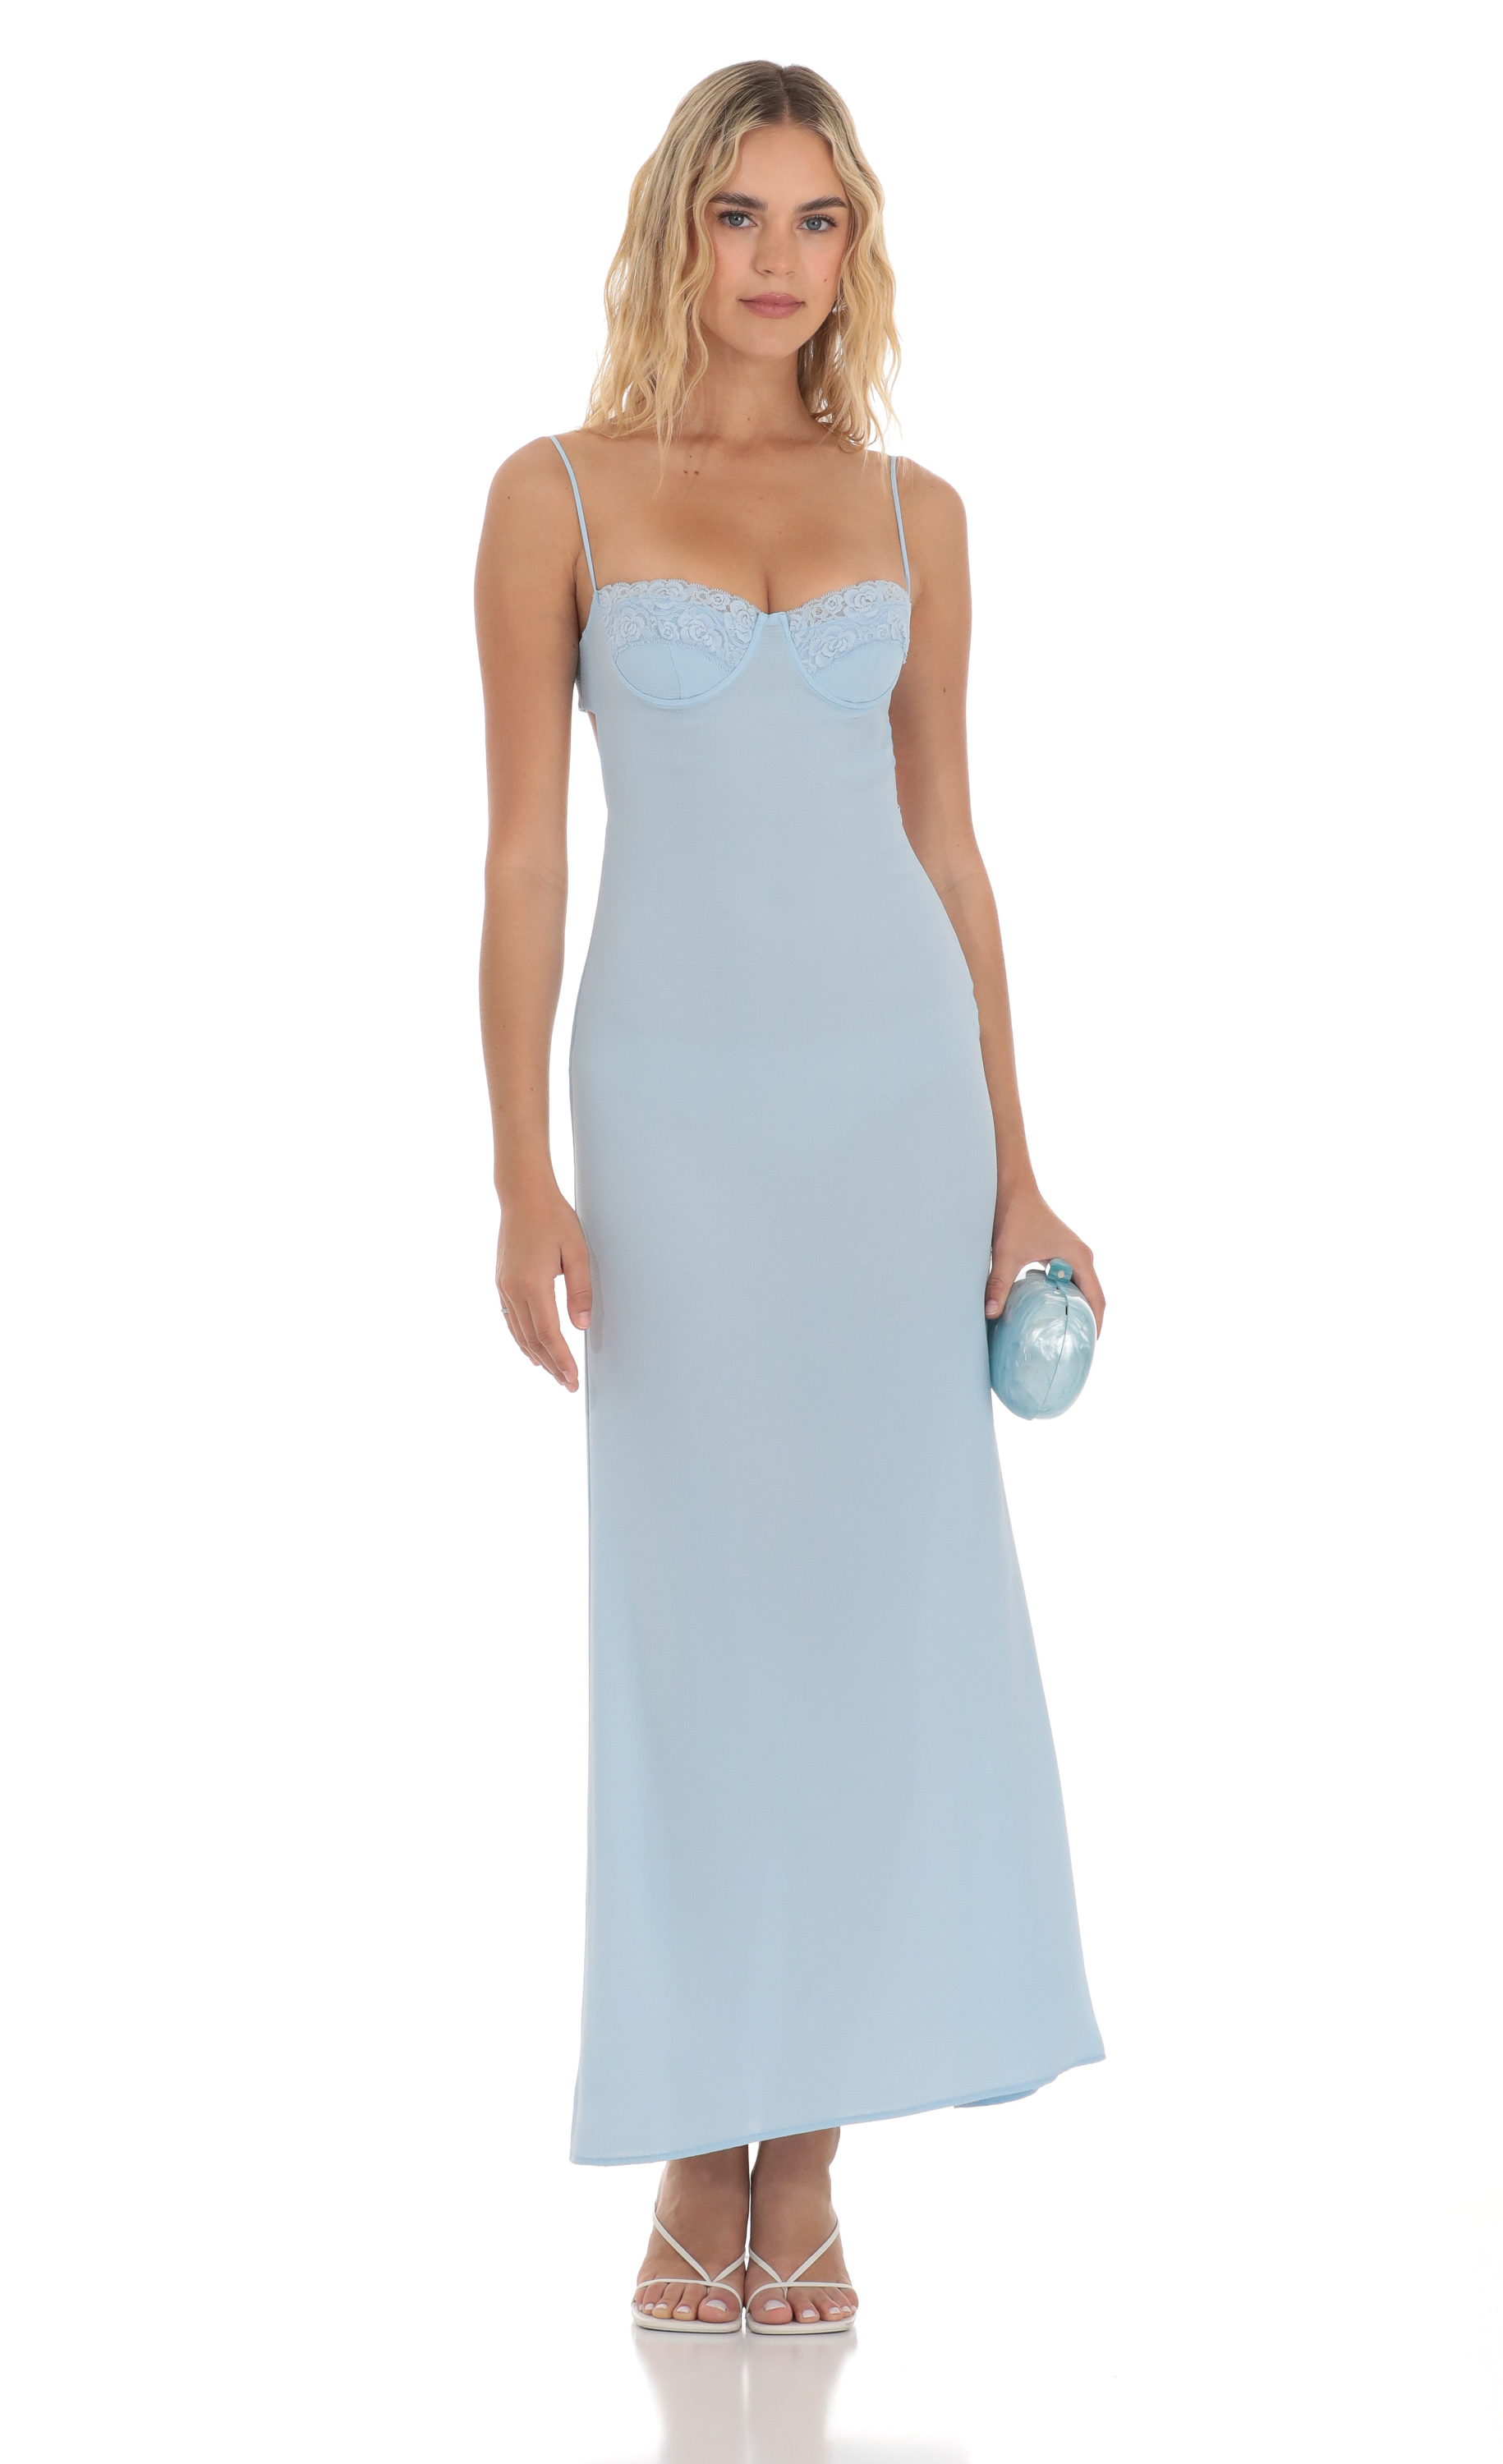 Lace Trim Maxi Dress in Light Blue